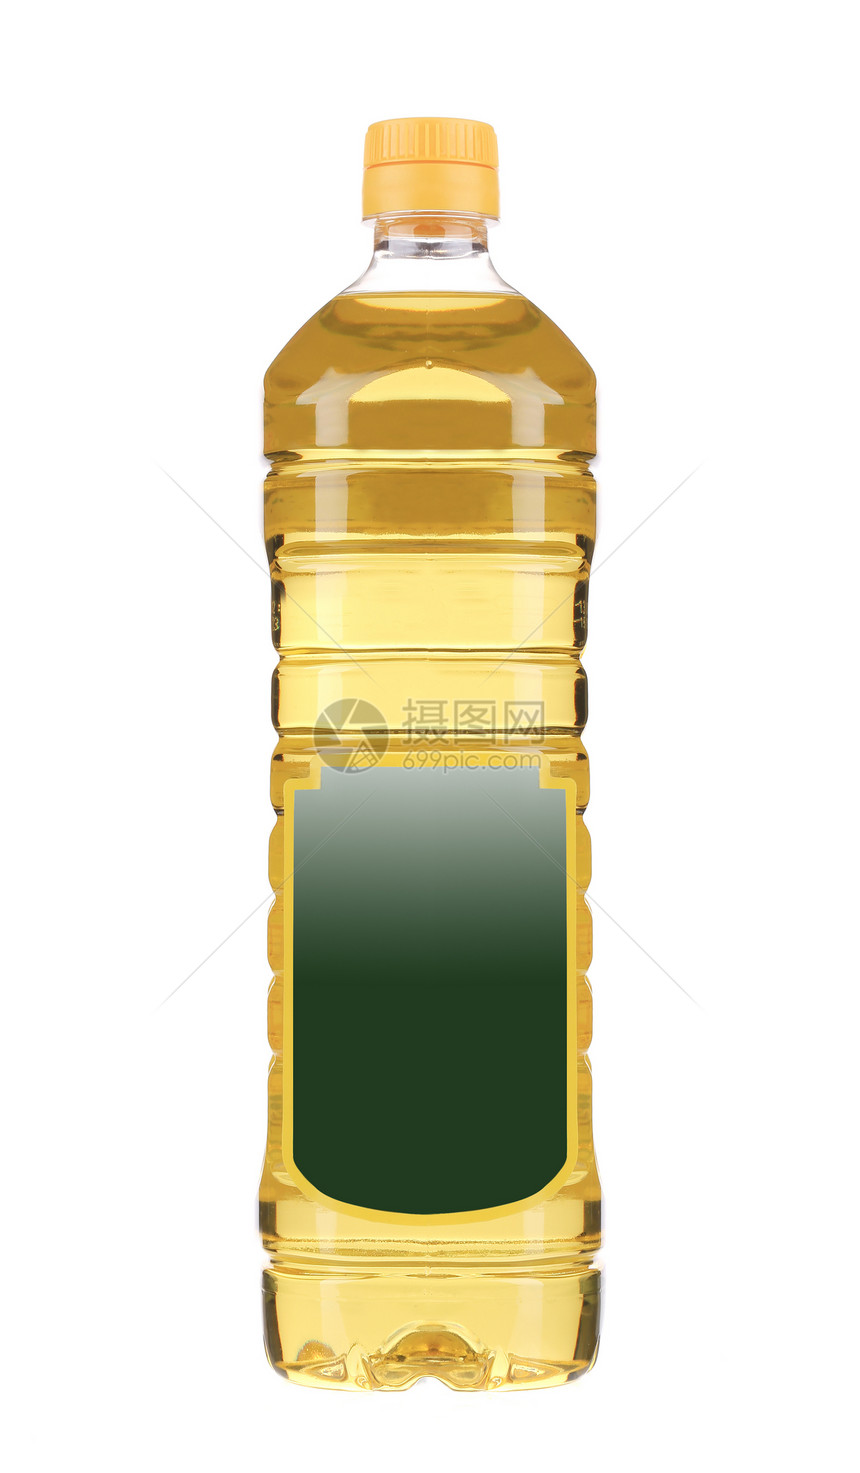 向日葵油瓶黄色蔬菜金子调味品食物烹饪白色美食草本植物瓶装图片